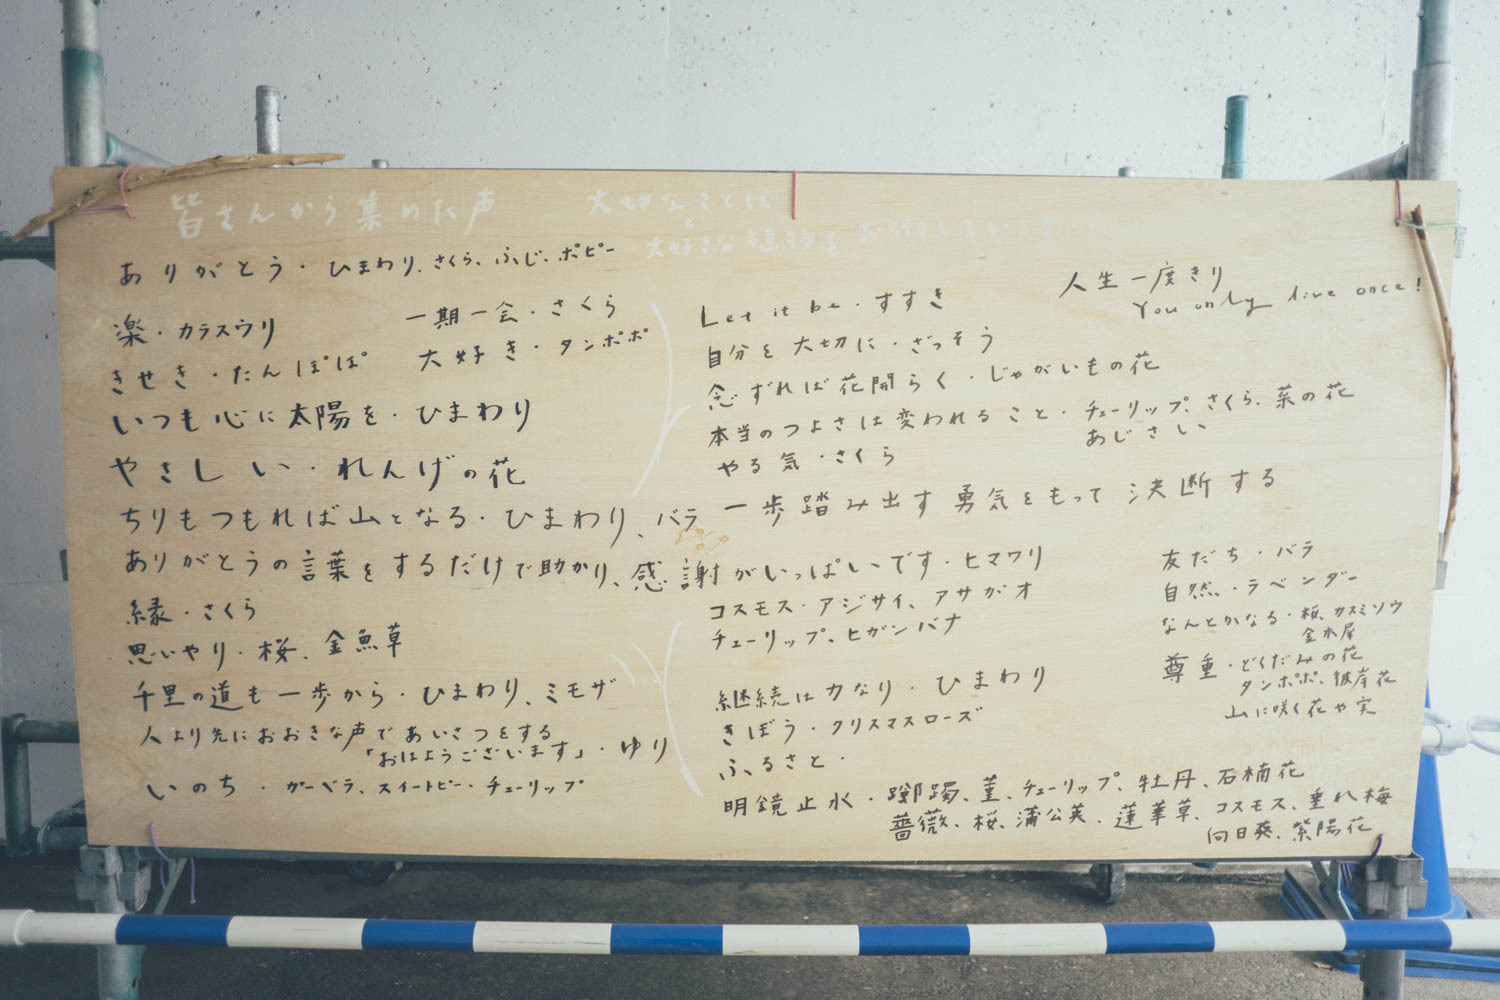 山崎インター歩行者通路リニューアル事業に「集まった声」が記入された木製ボードの写真